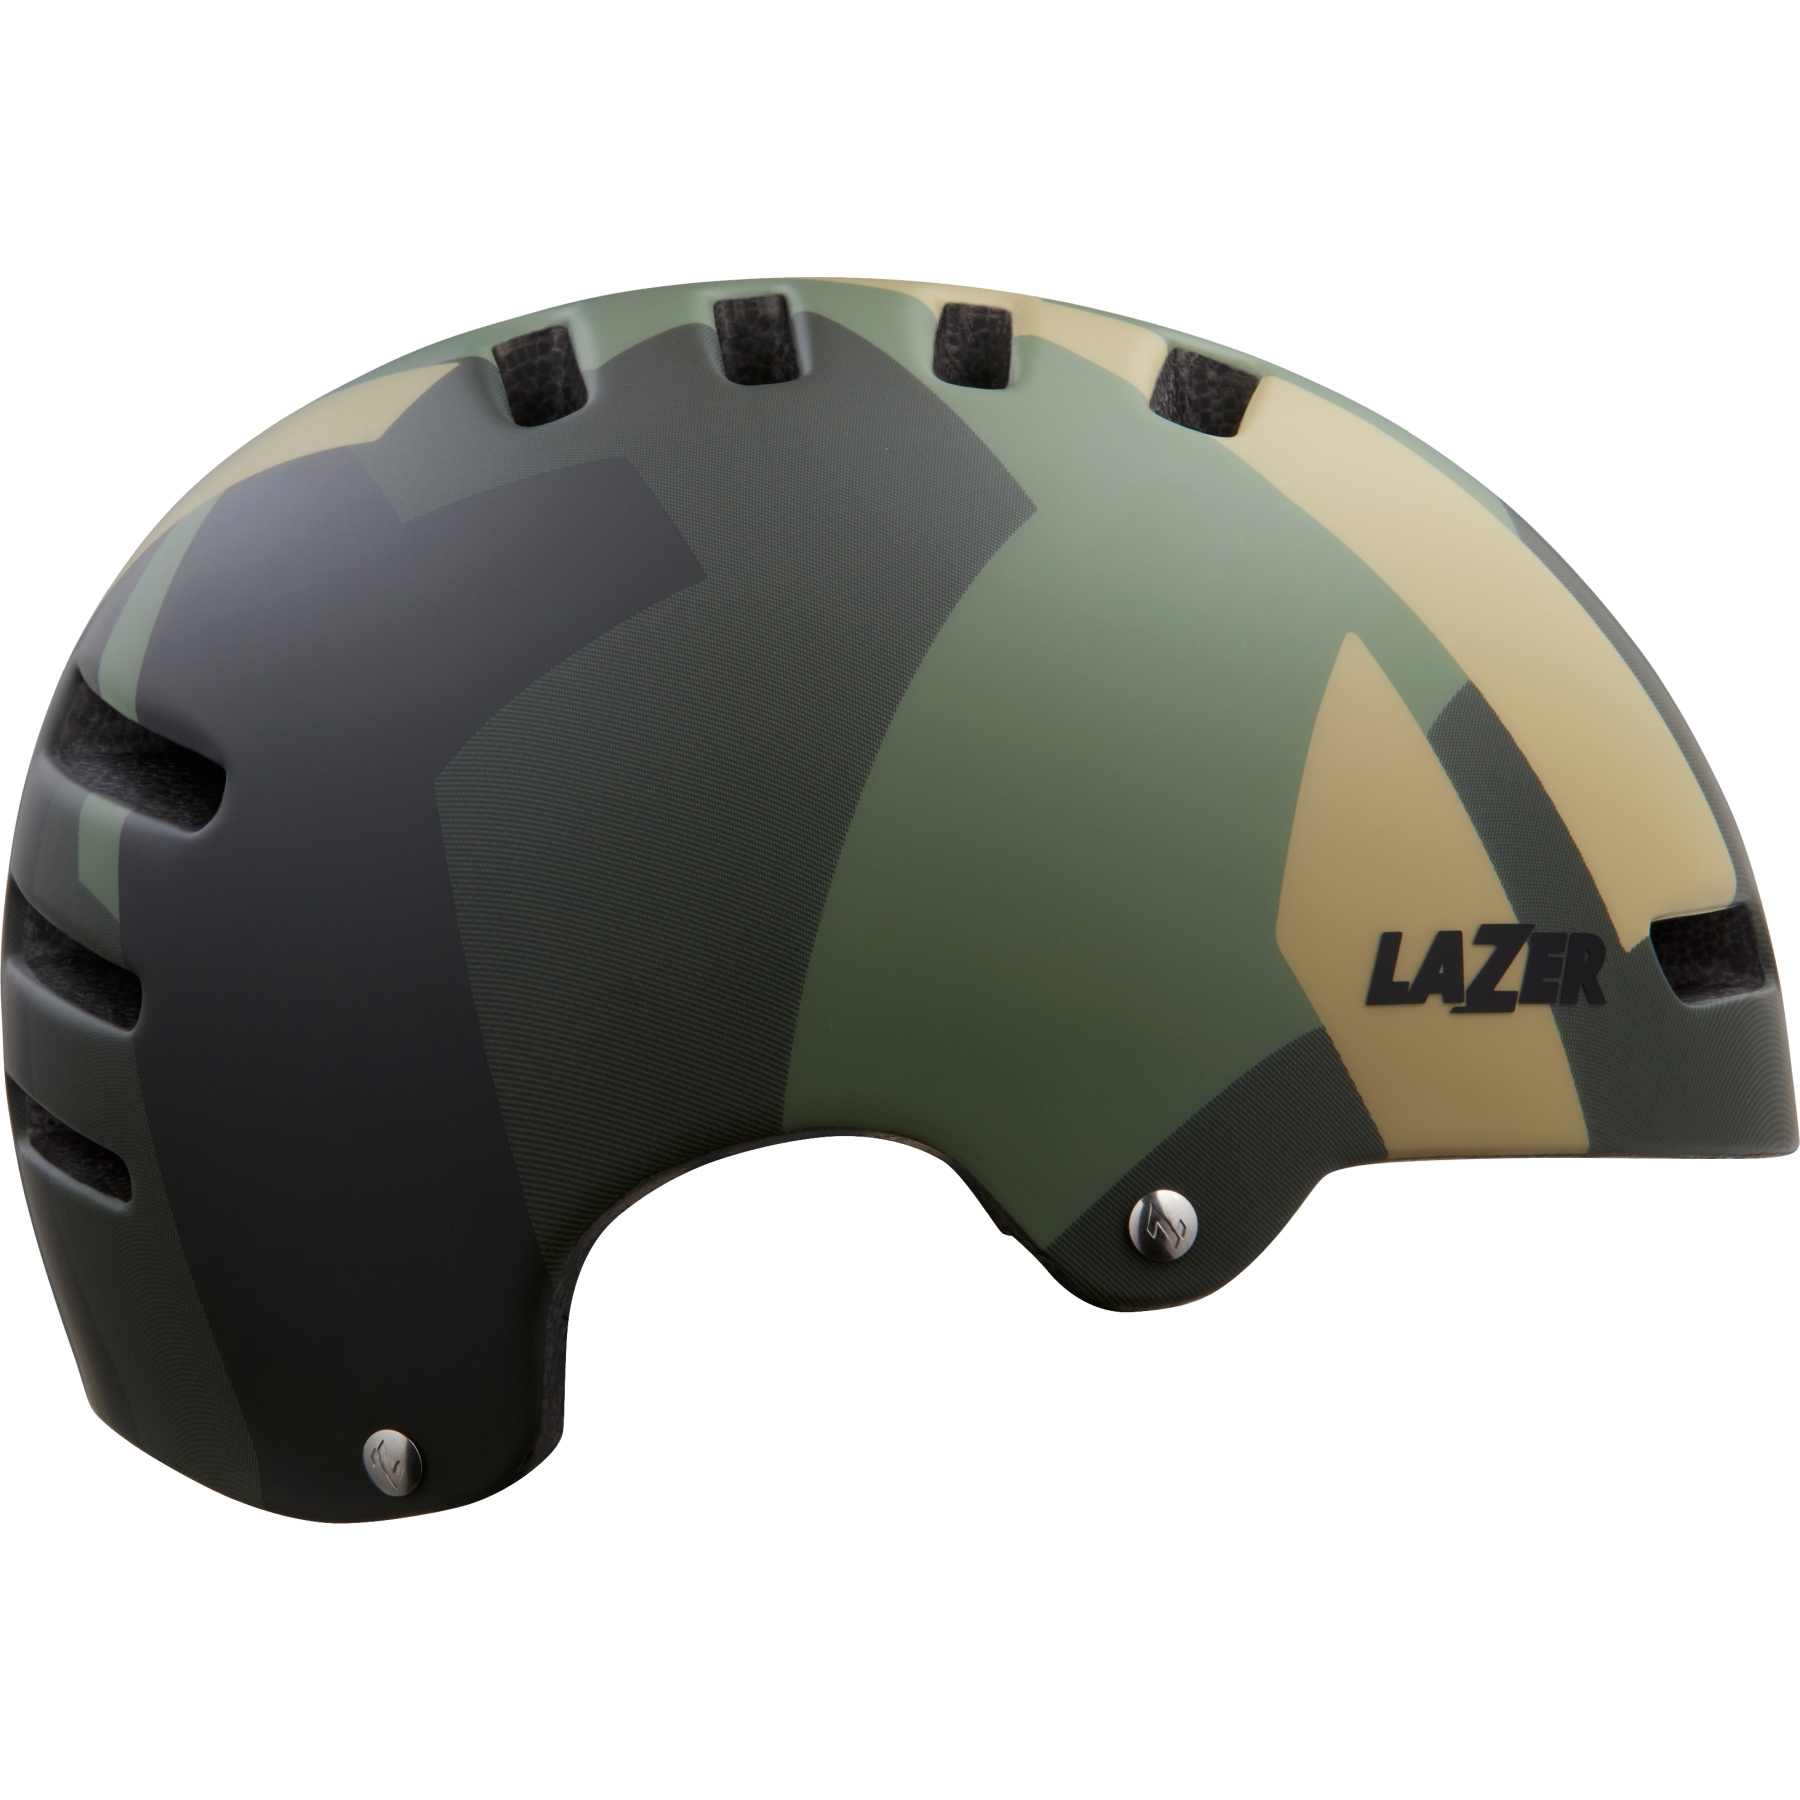 Produktbild von Lazer Armor 2.0 MIPS Helm - matte camo